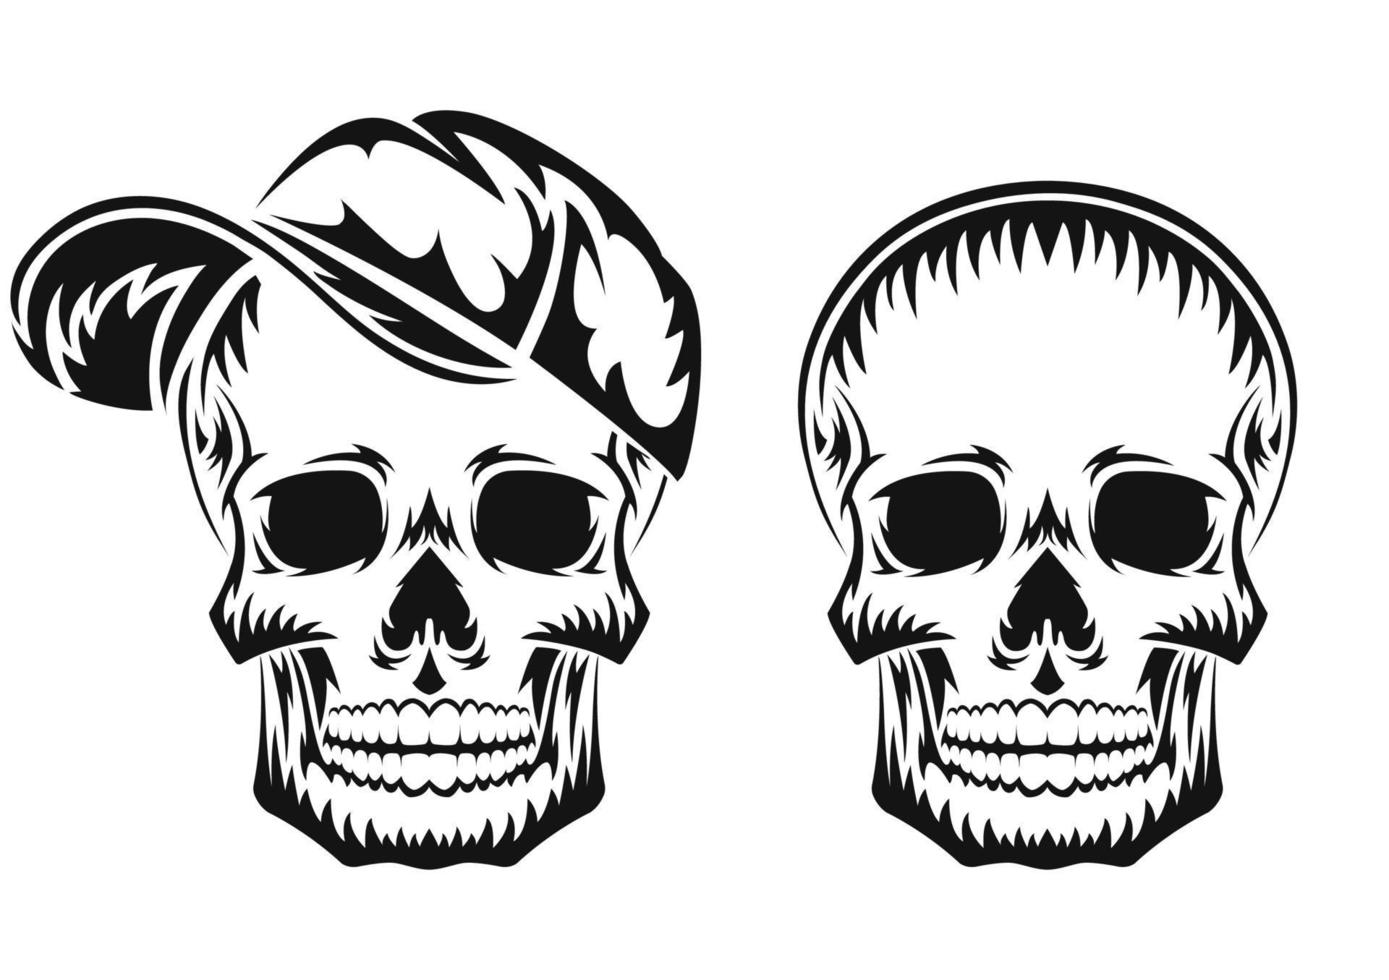 menselijke schedel. zwart silhouet. ontwerpelement. handgetekende schets. vintage-stijl. vectorillustratie geïsoleerd op een witte achtergrond. vector